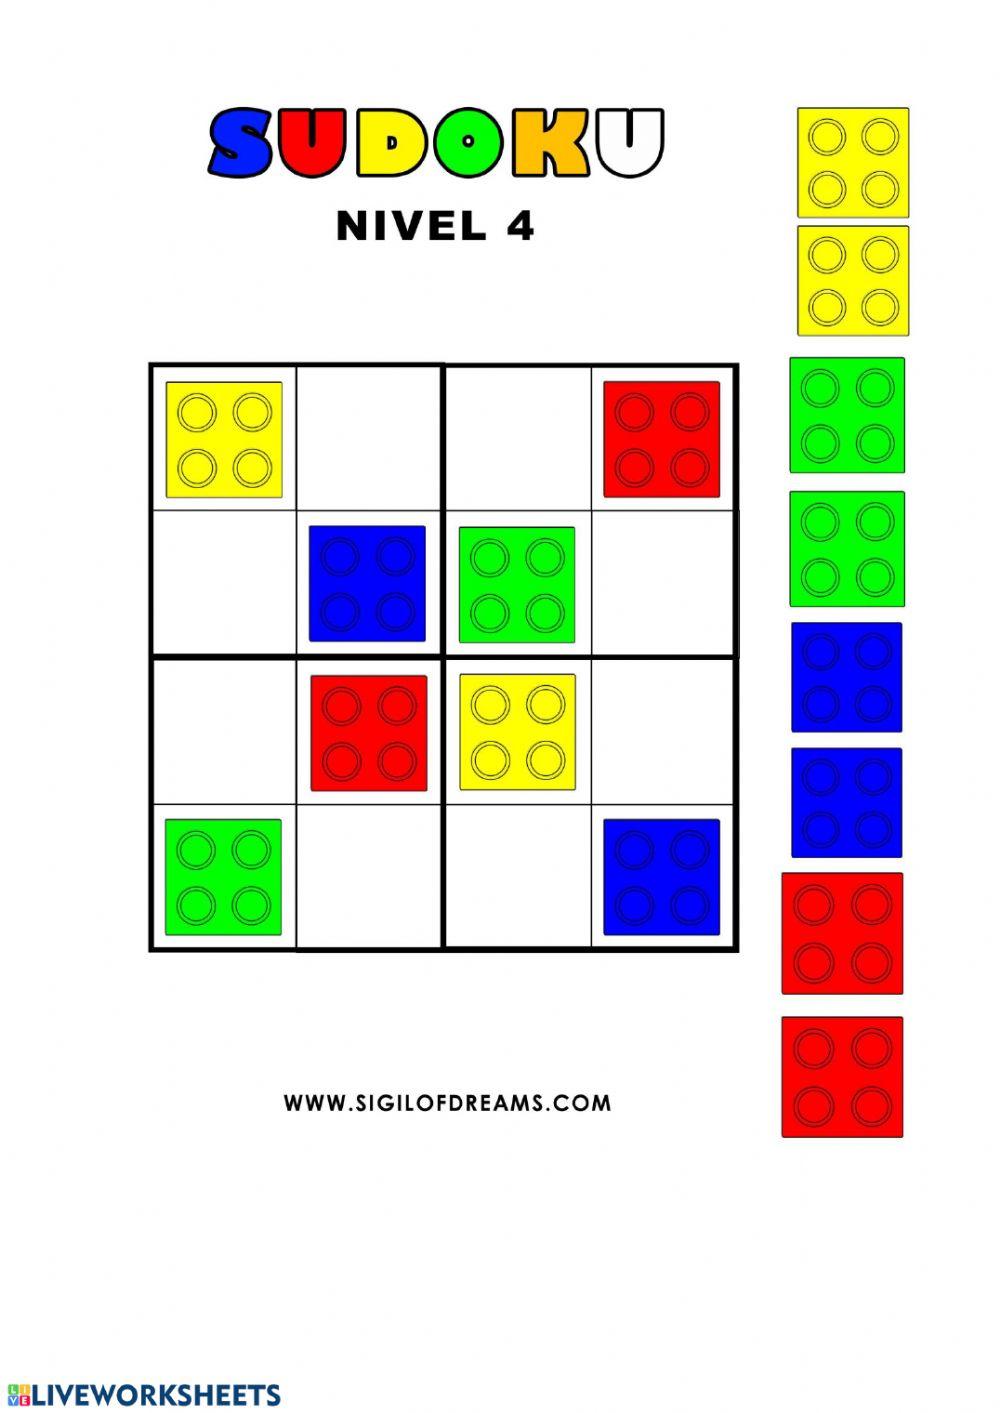 Sudoku lego worksheet | Live Worksheets